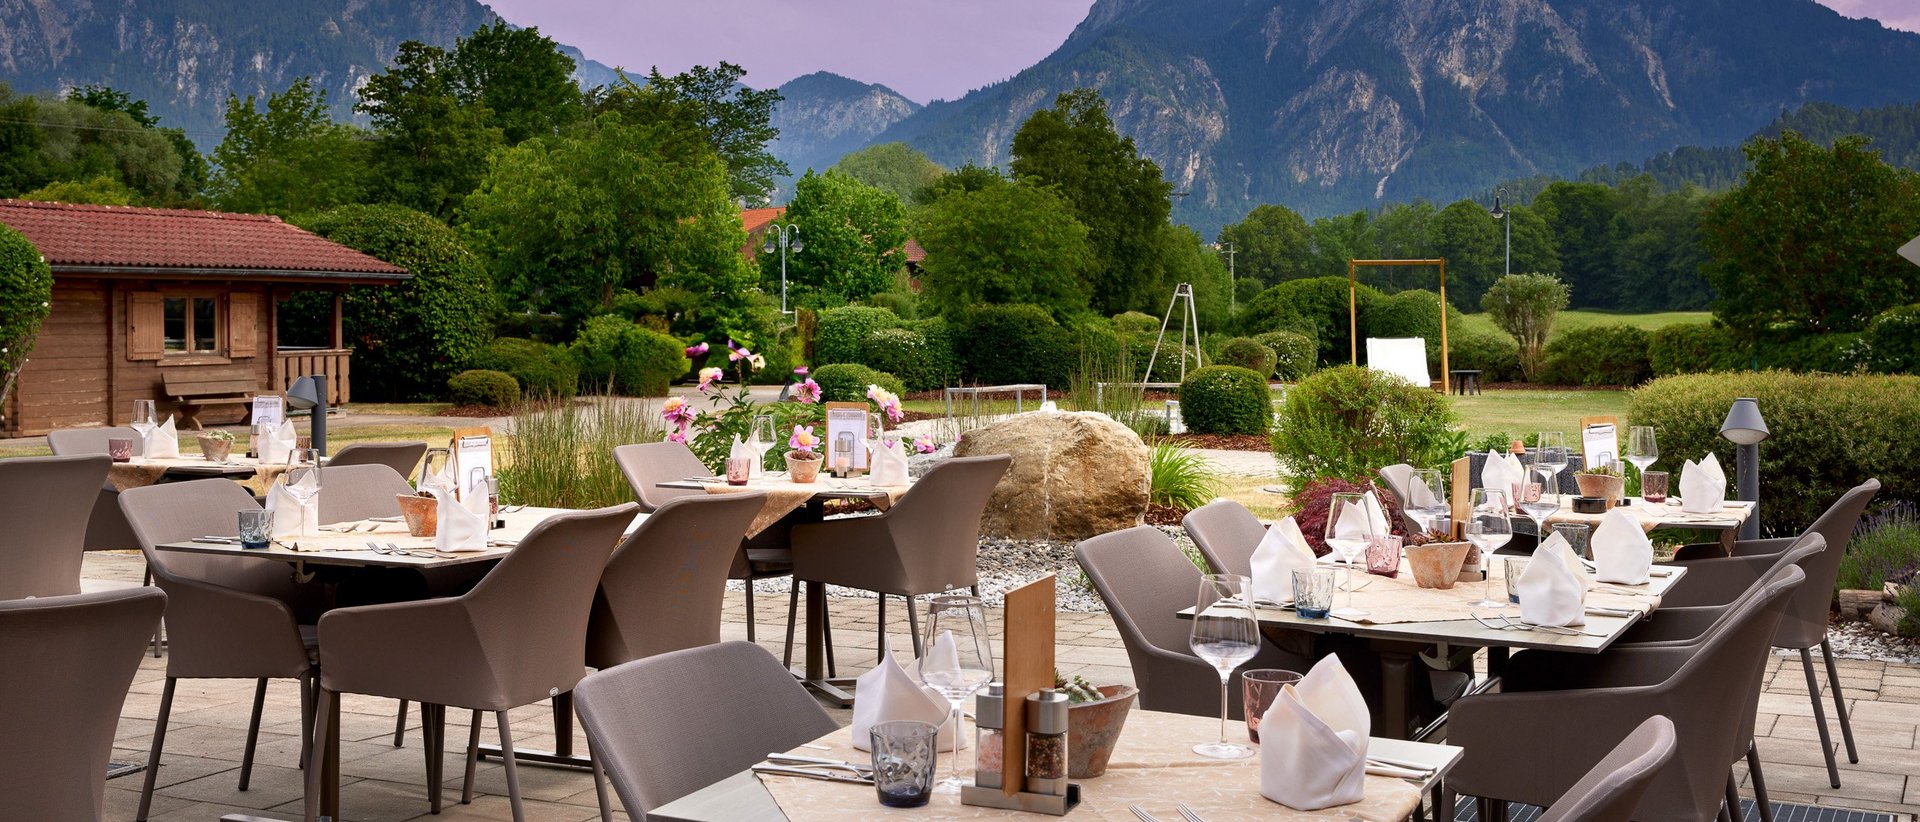 Restaurant am Forggensee | Hotel Sommer